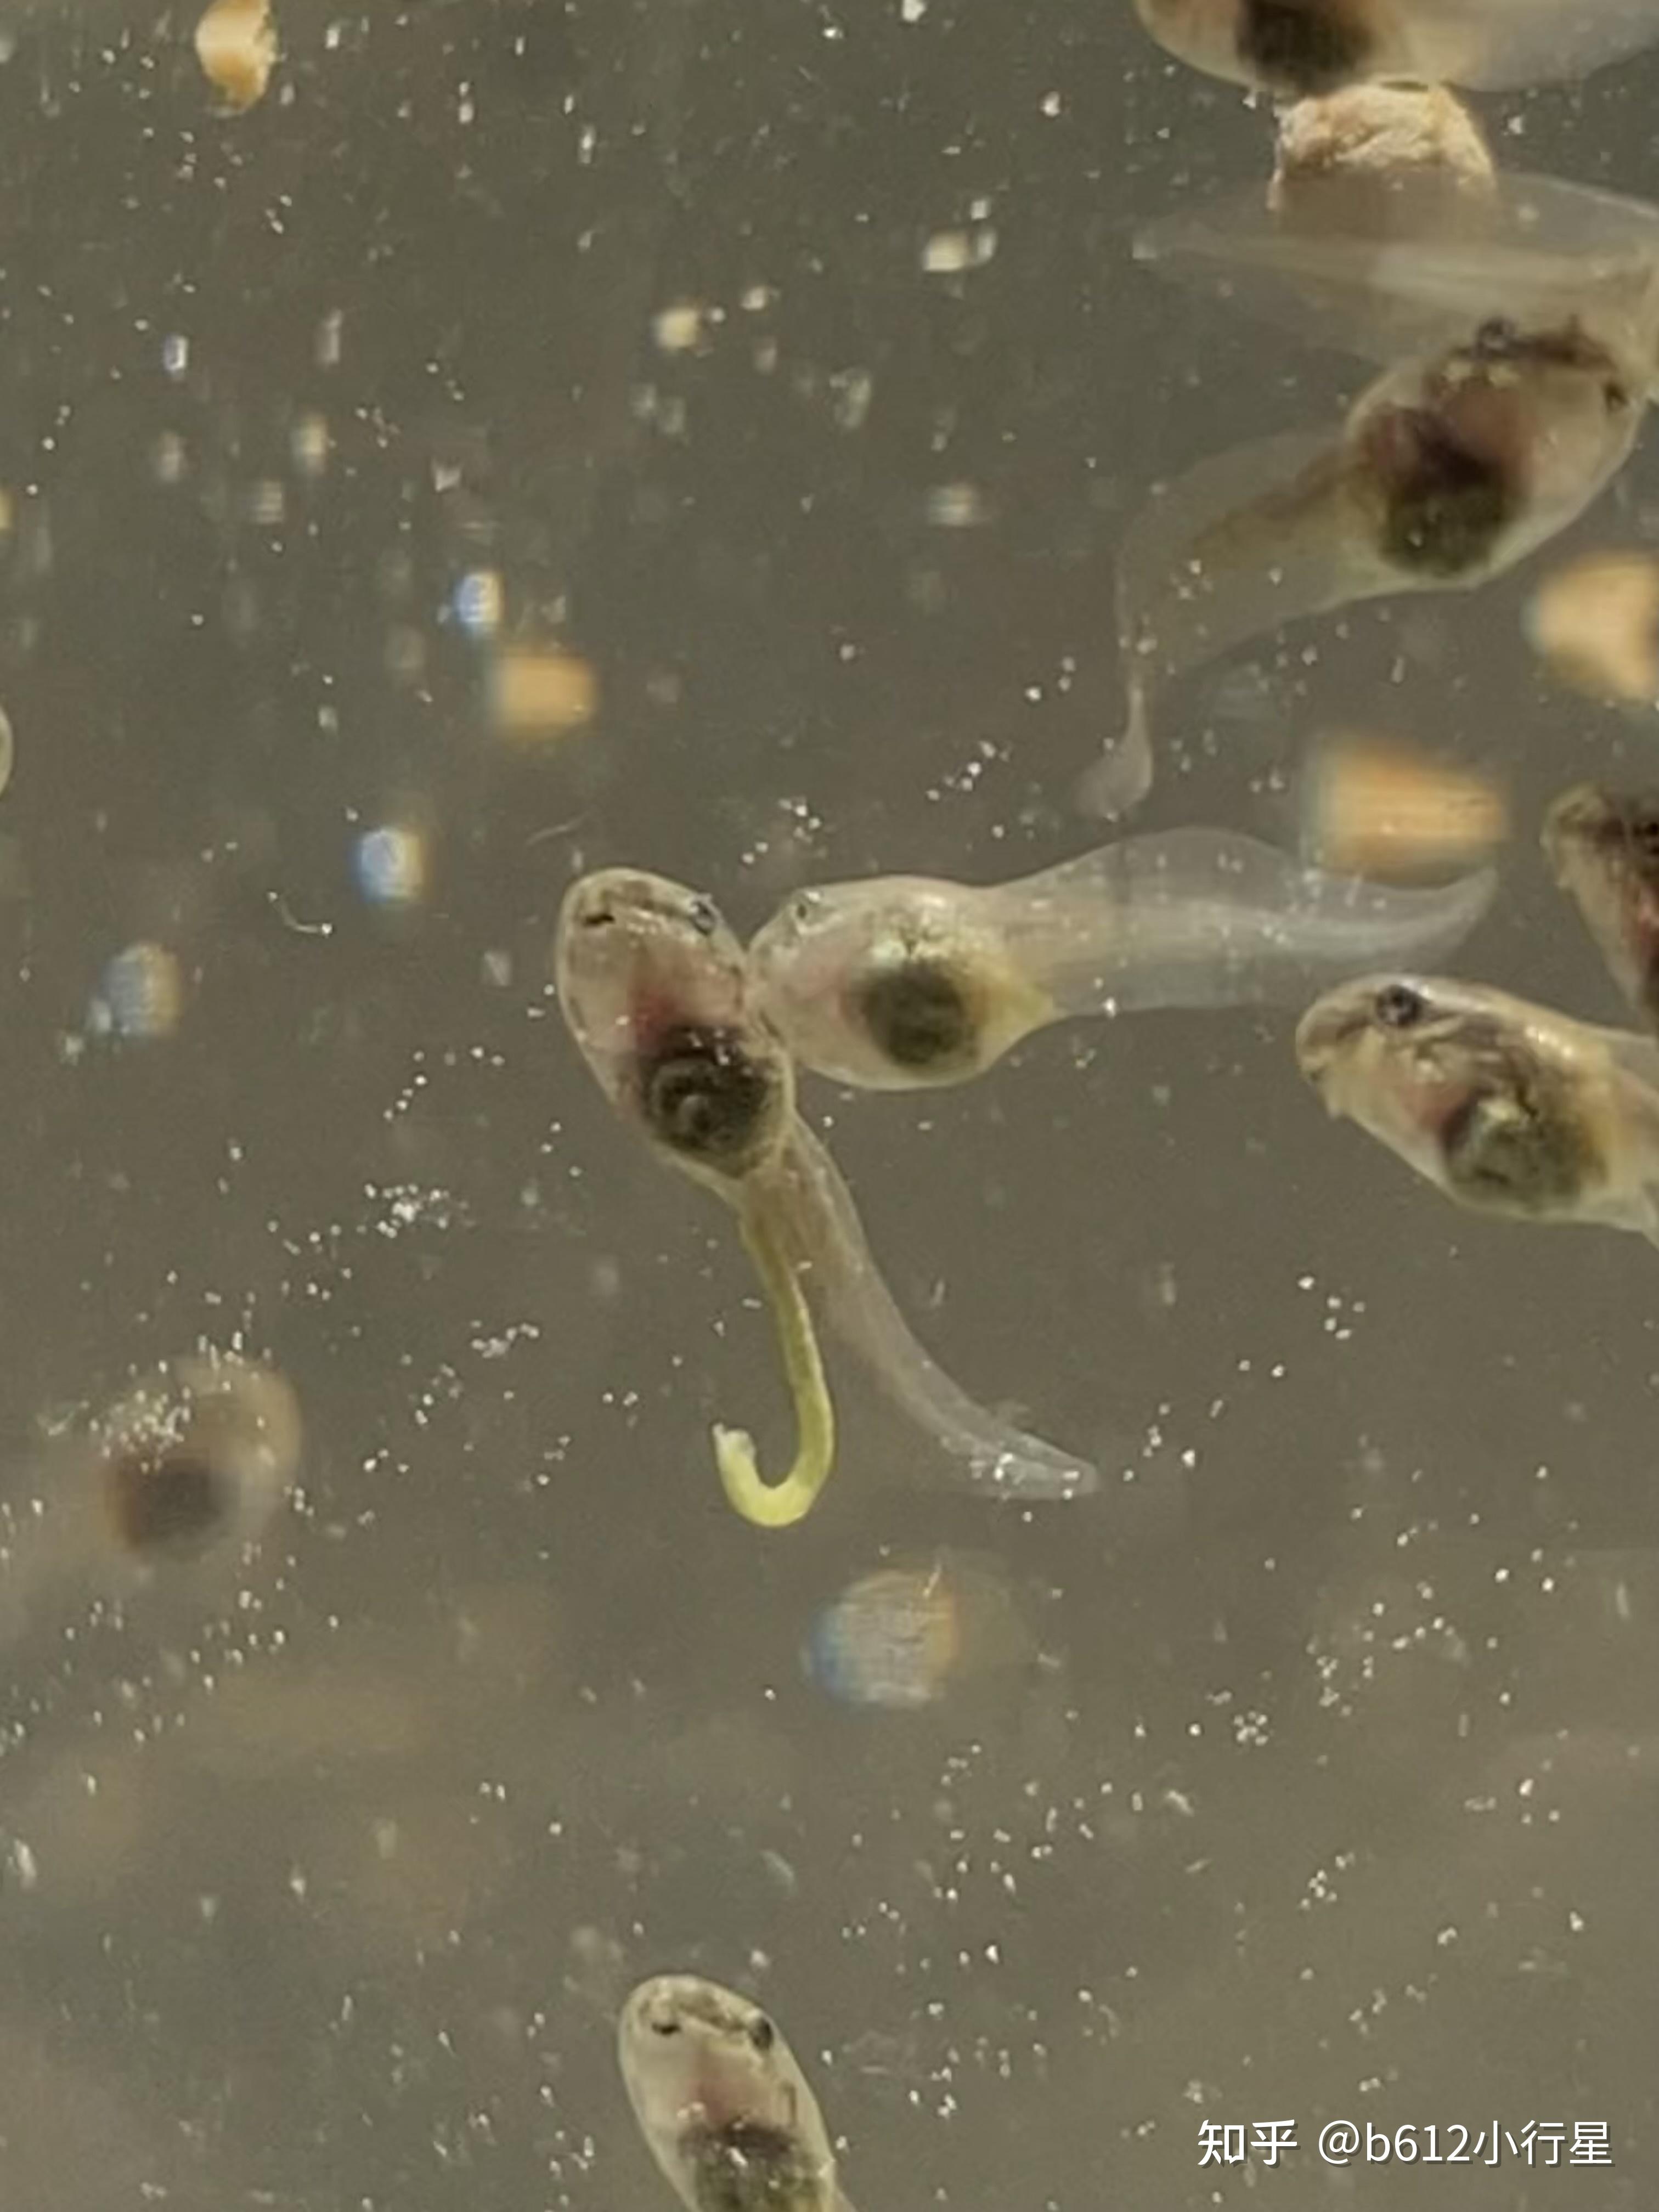 记录青蛙卵孵化和小蝌蚪生长过程 